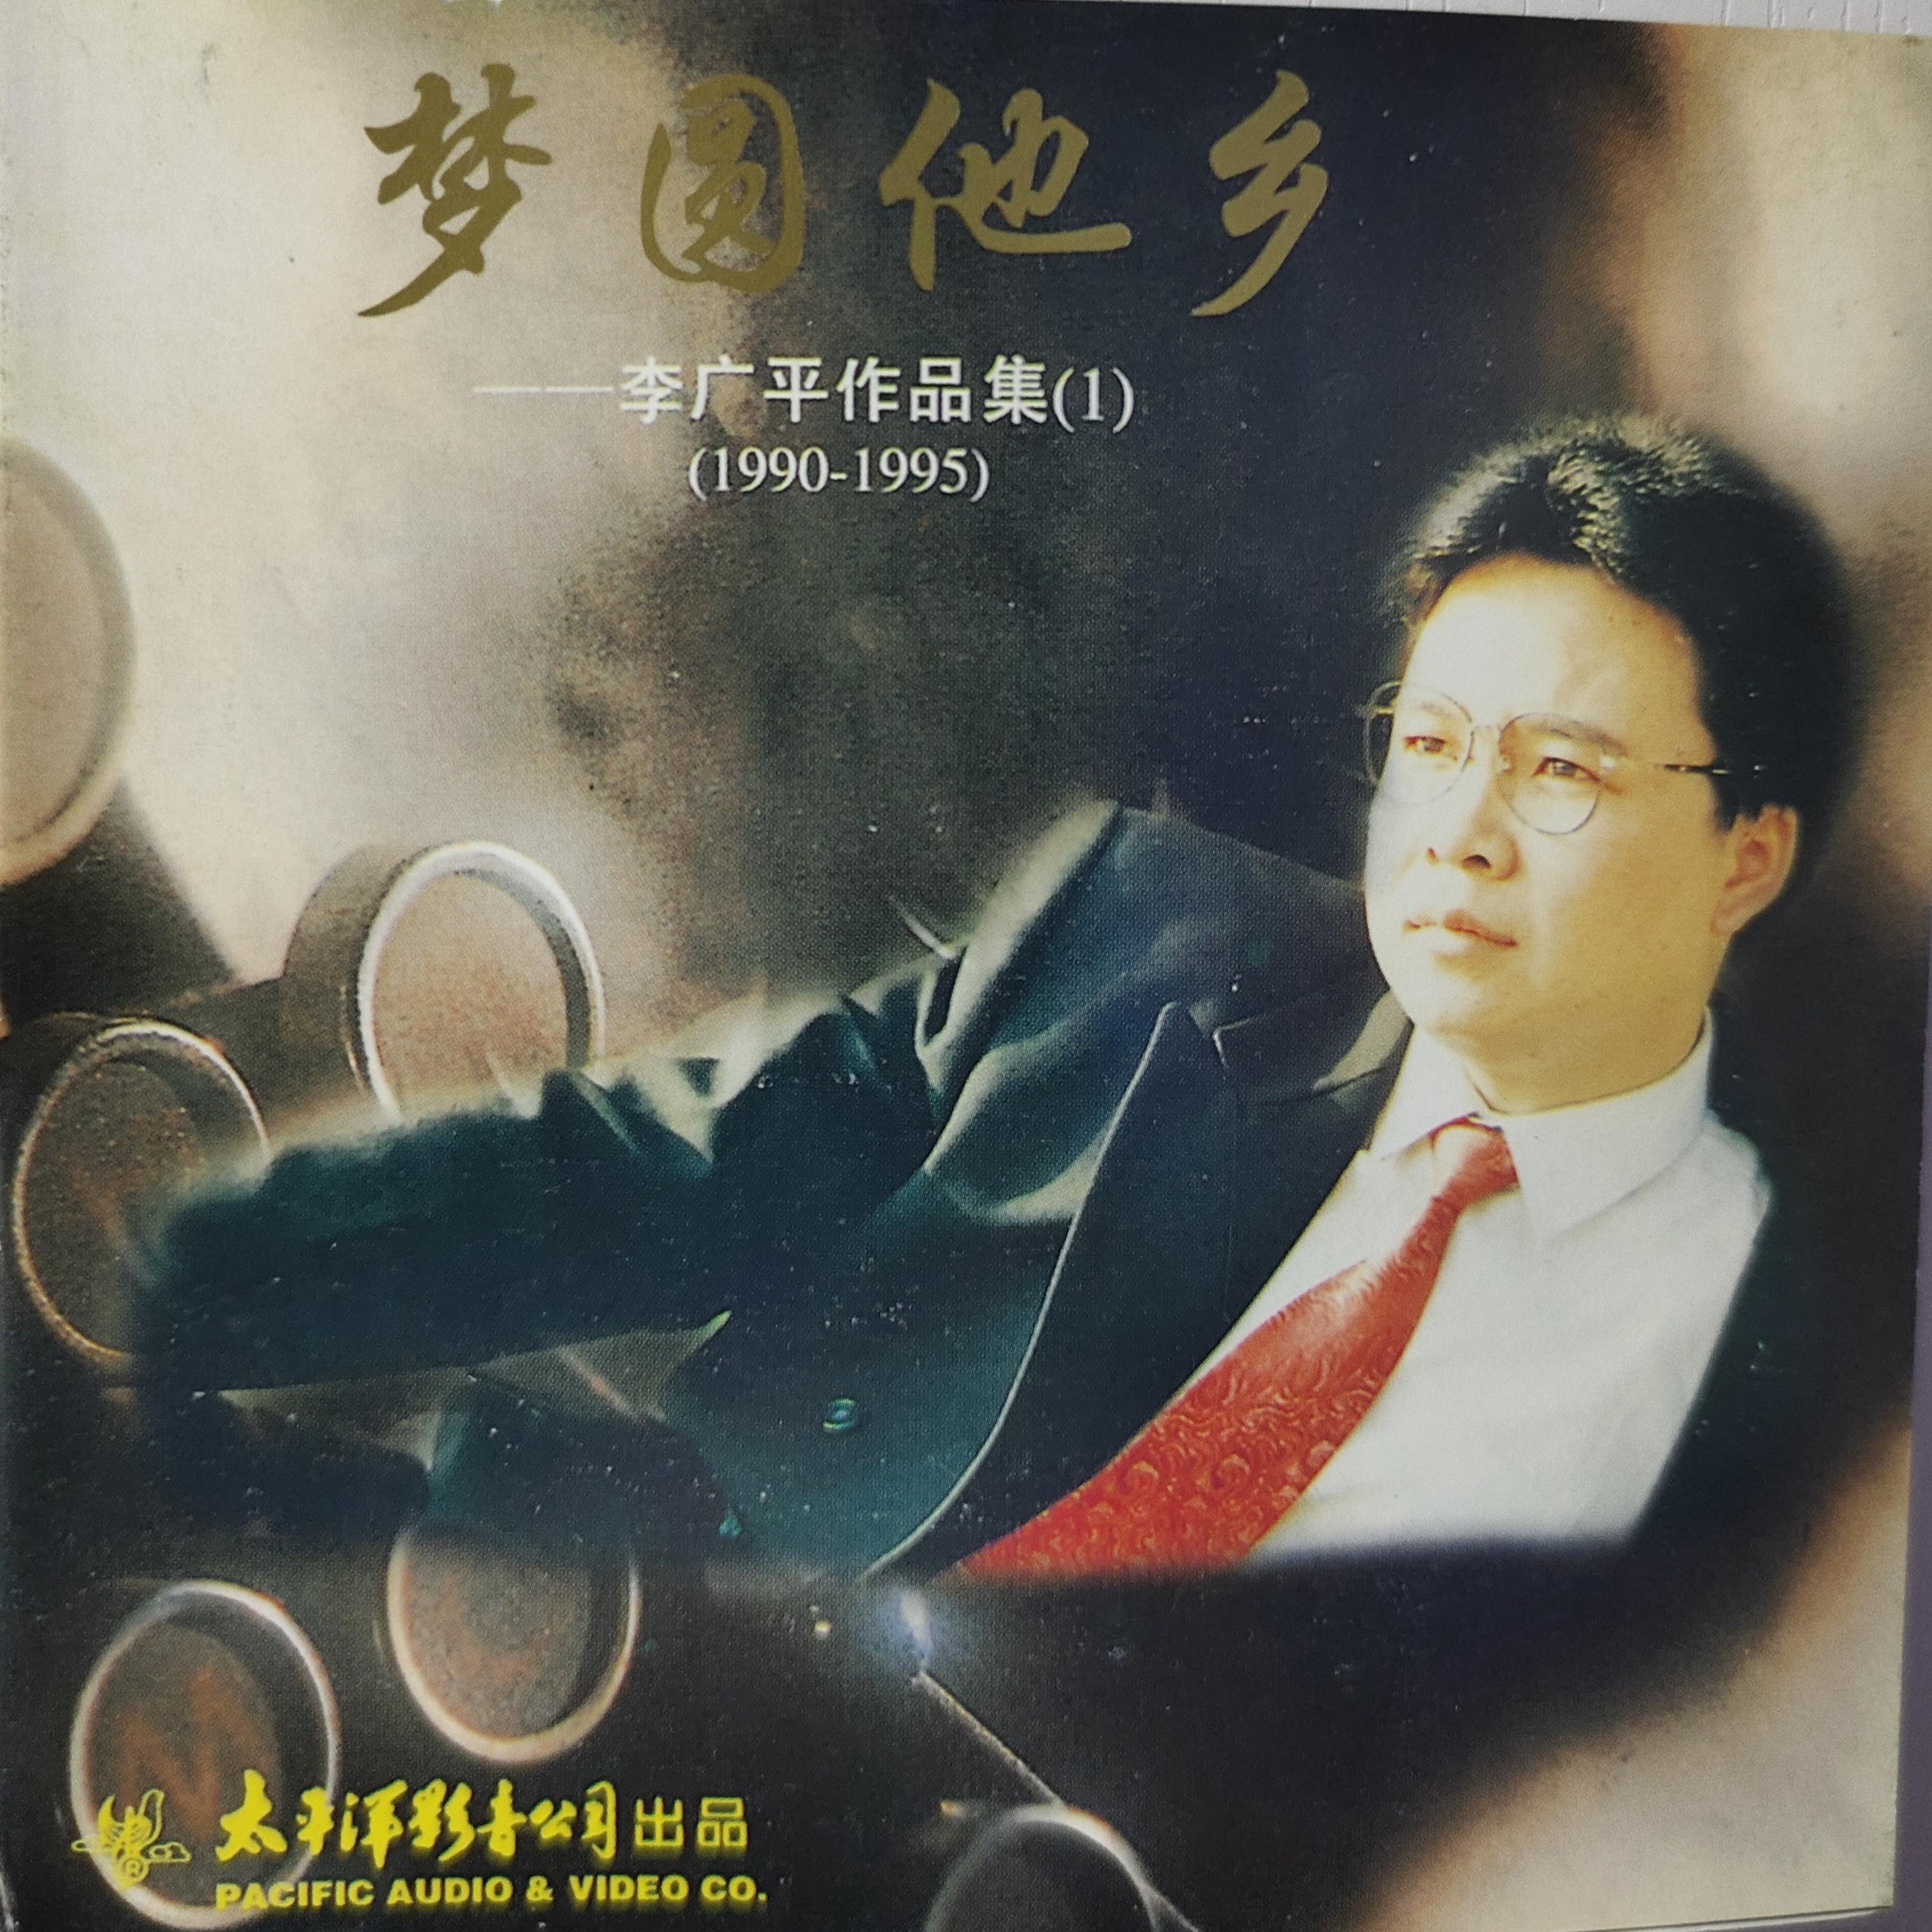 meng yuan ta xiang li guang ping zuo pin ji 1 1990 1995